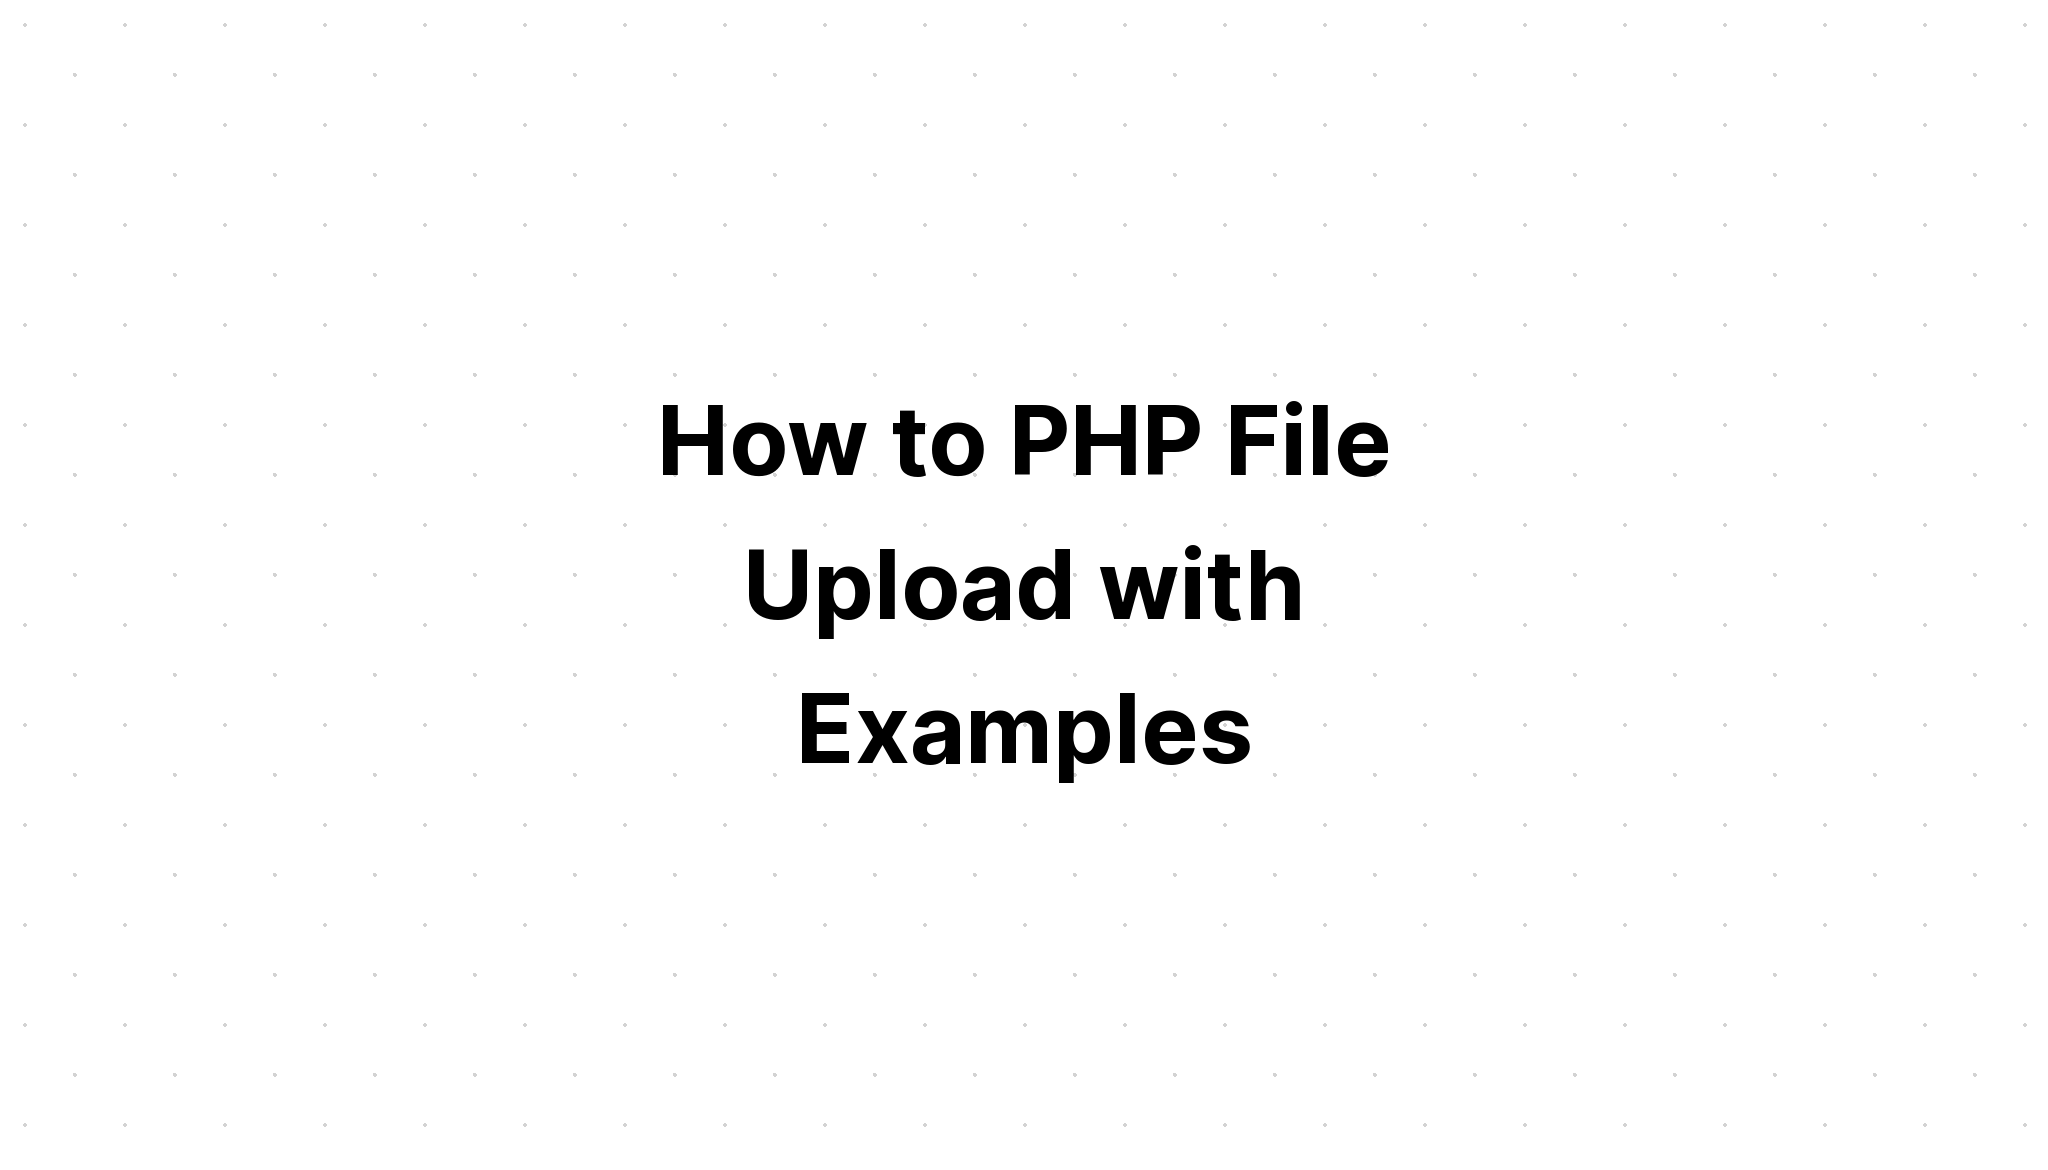 Cara Upload File PHP dengan Contohnya